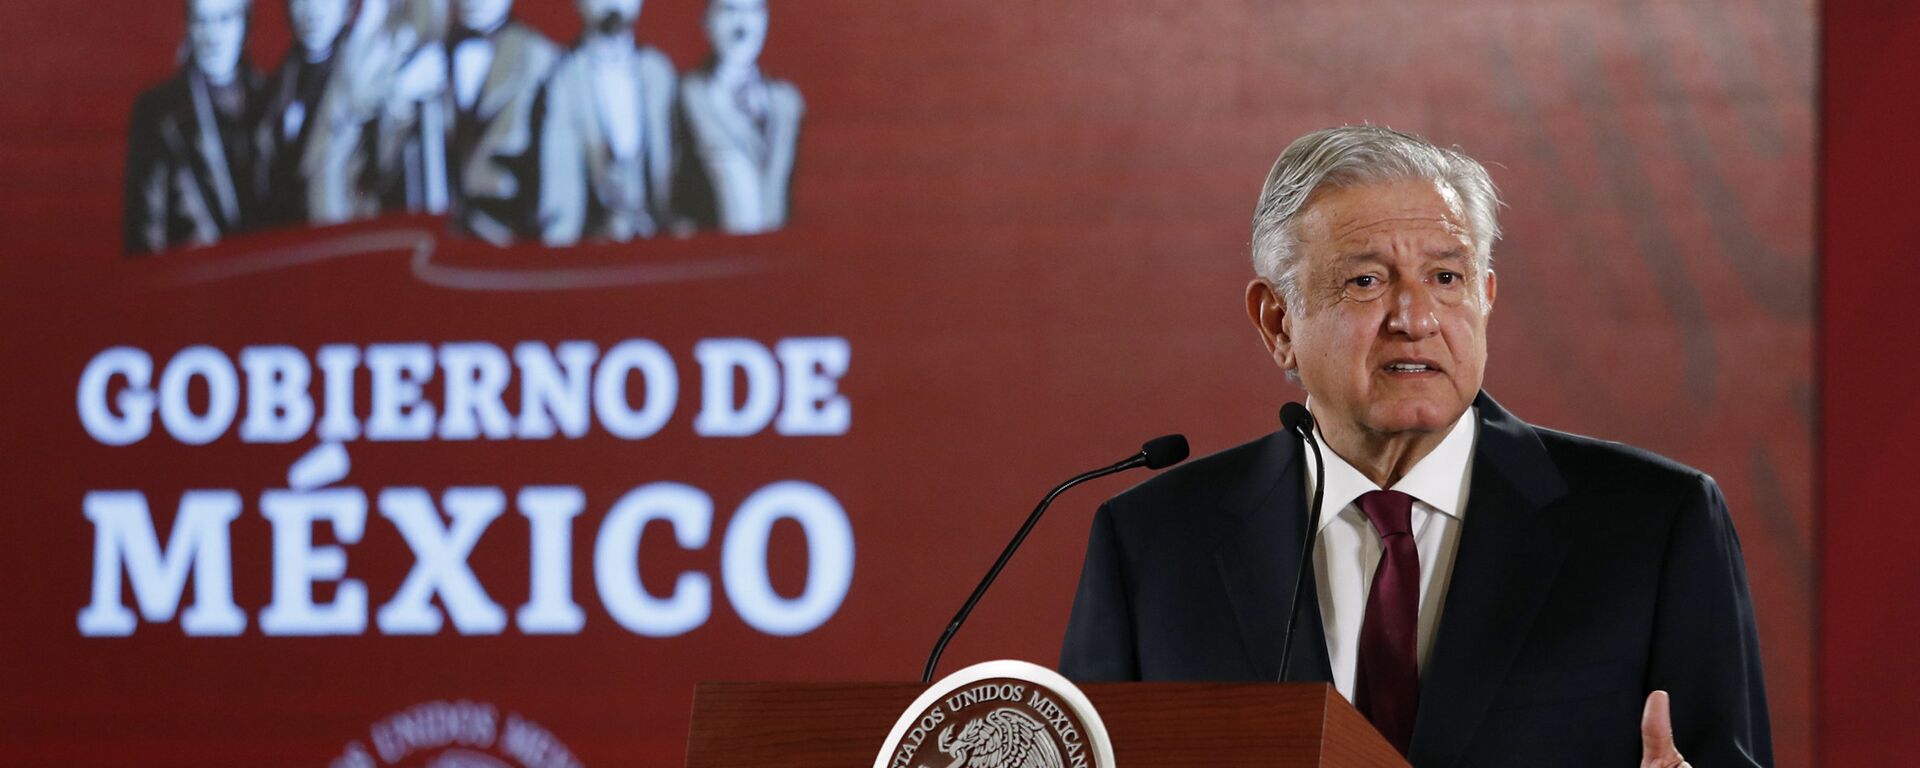 Andrés Manuel López Obrador, presidente de México - Sputnik Mundo, 1920, 14.09.2021